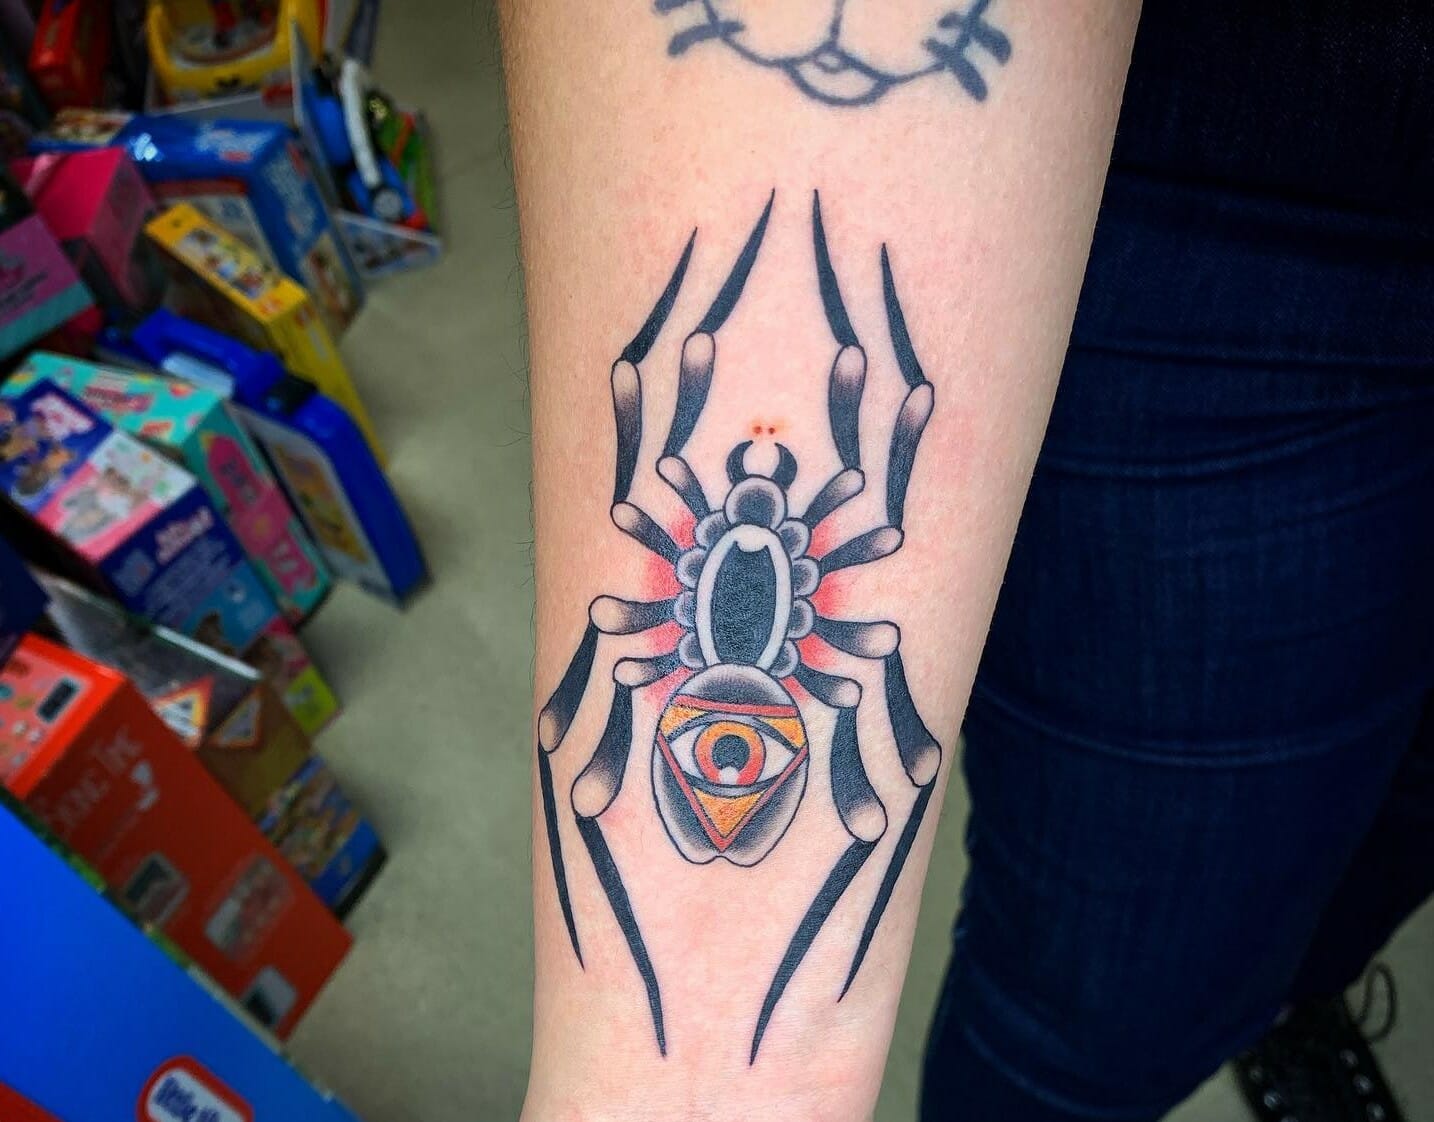 Fine line black widow spider tattoo on the hand